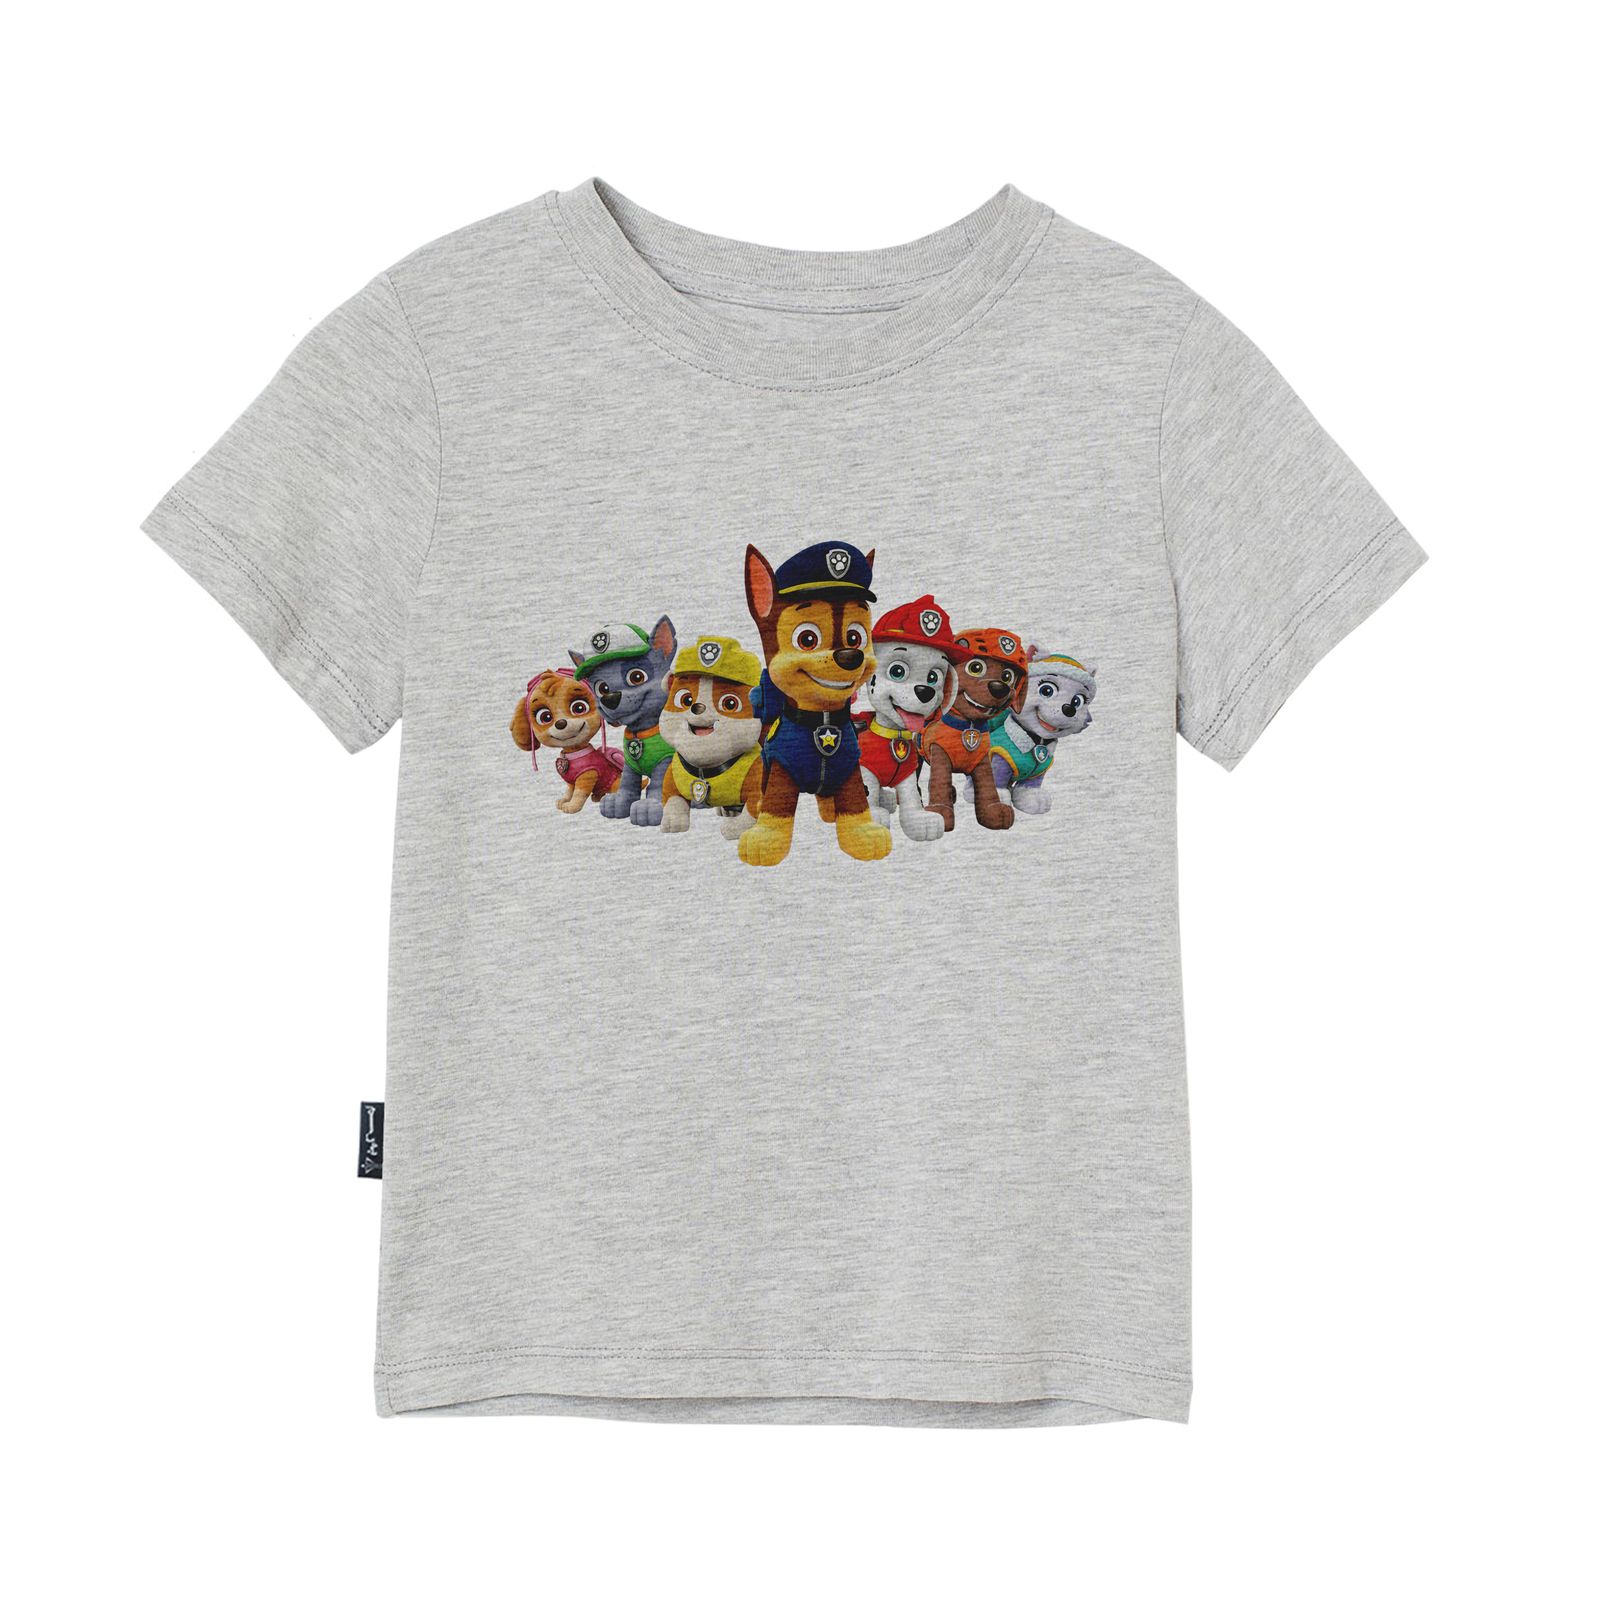 تی شرت آستین کوتاه دخترانه به رسم مدل گشت پنجولی کد 110023 -  - 3